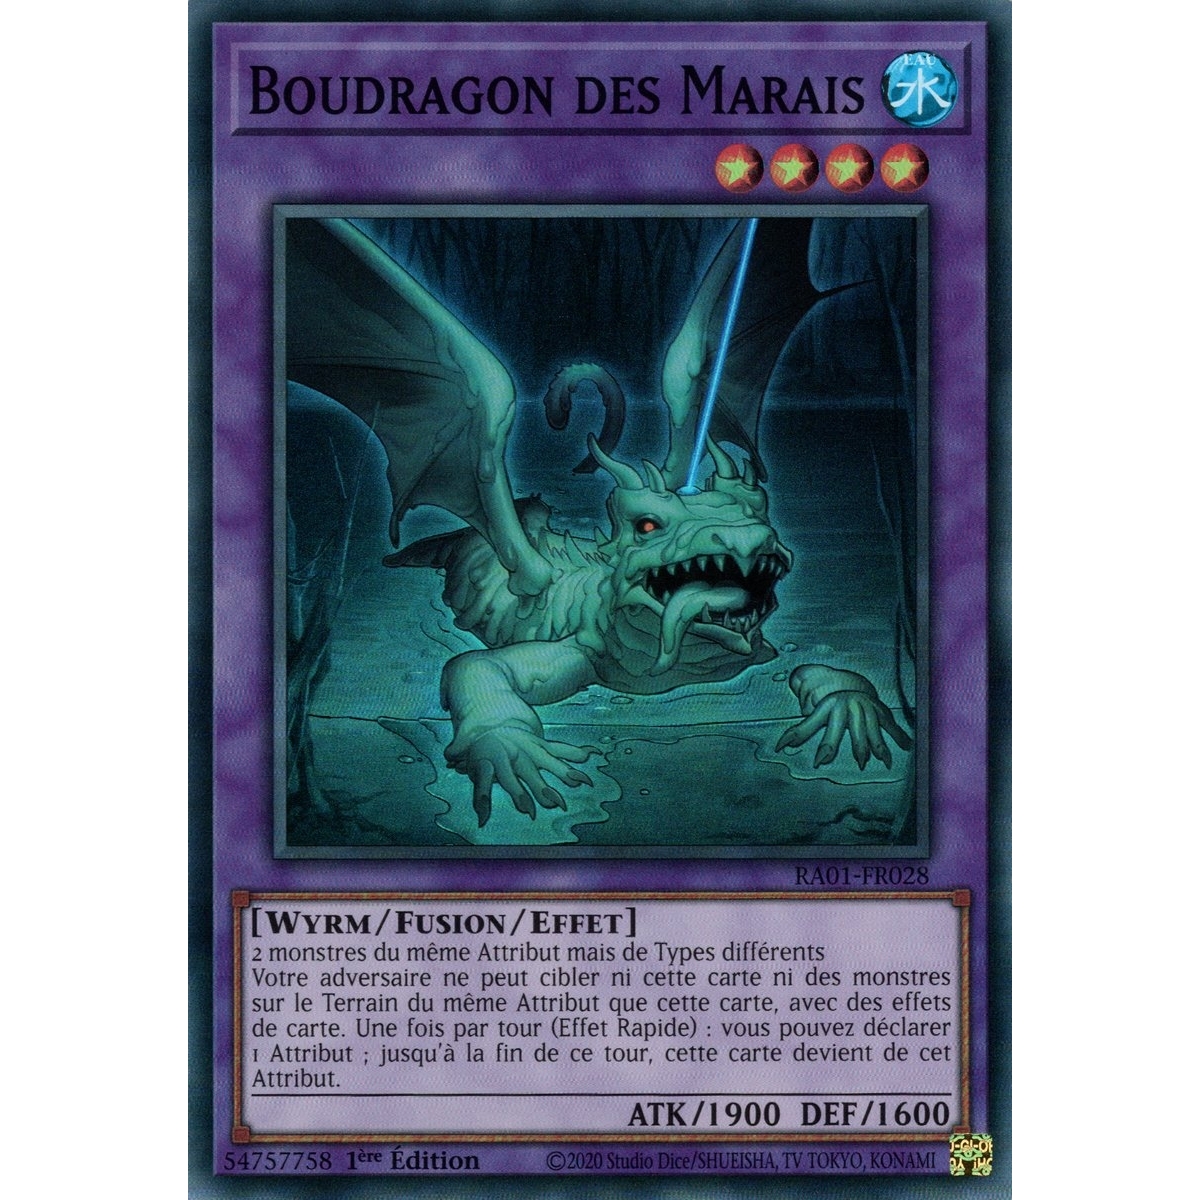 Boudragon des Marais RA01-FR028